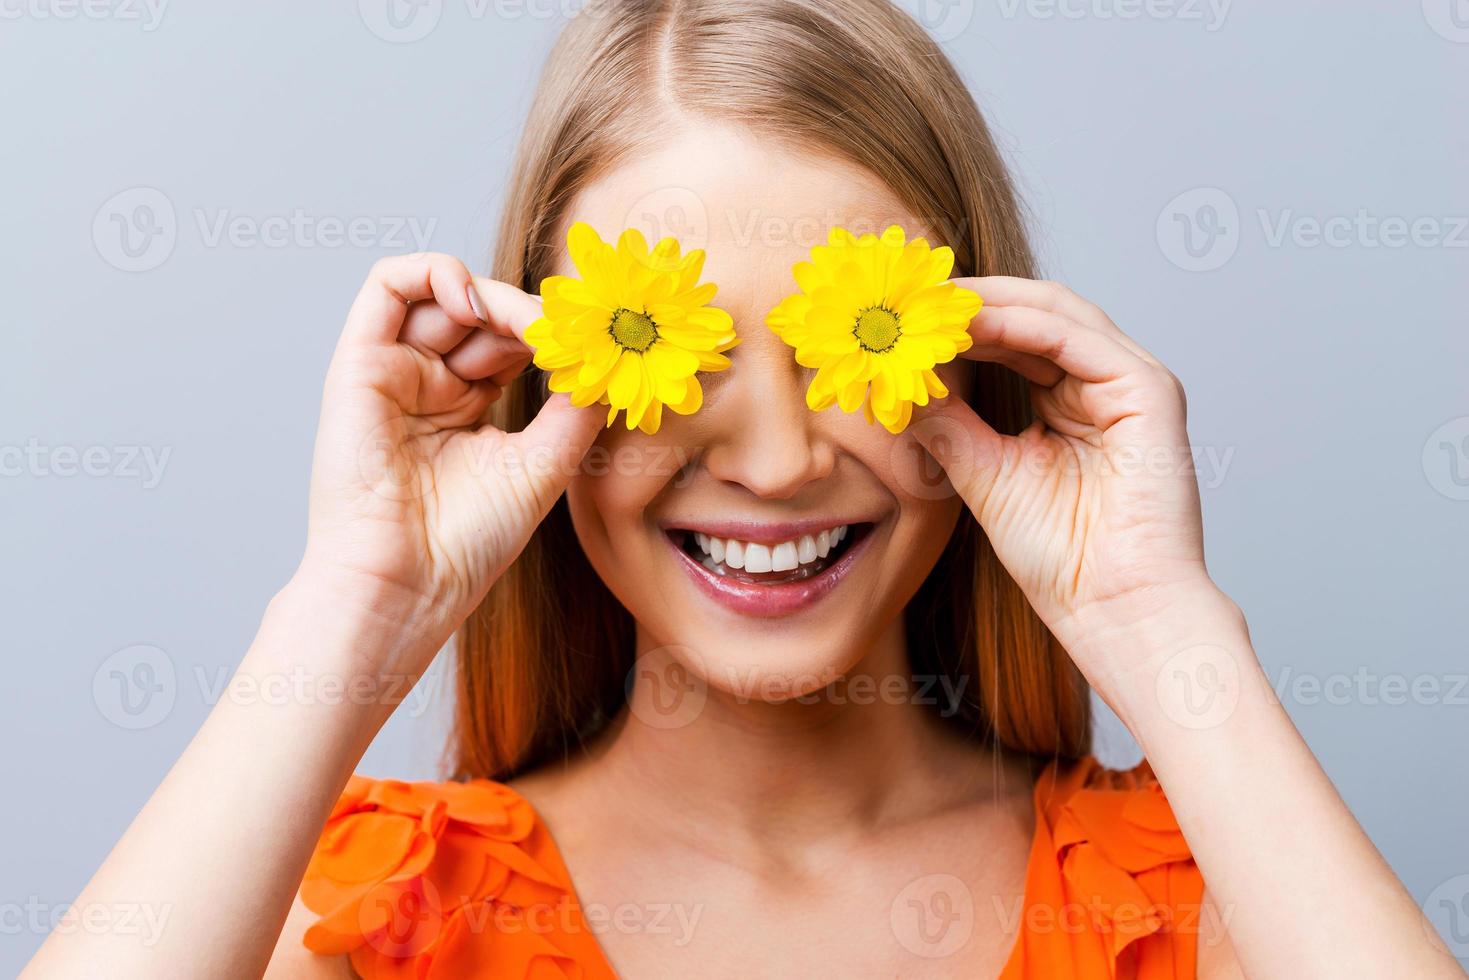 estado de ánimo de verano. bella joven con un bonito vestido sosteniendo flores frente a sus ojos mientras se enfrenta a un fondo gris foto